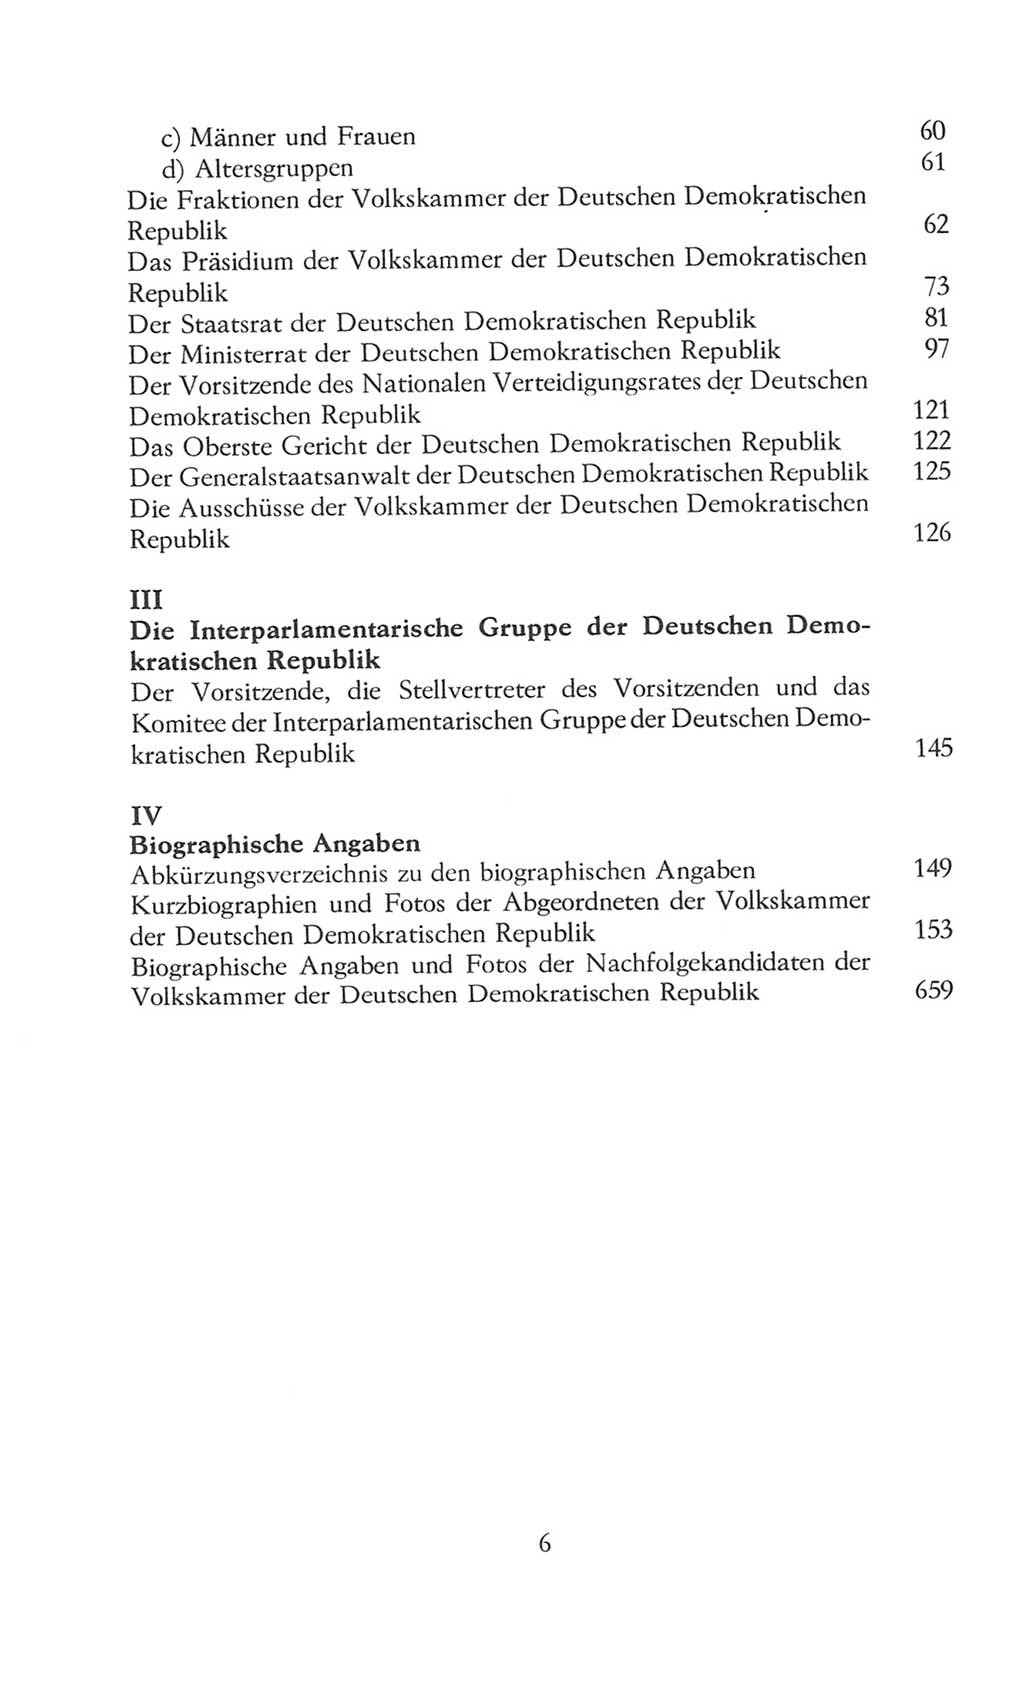 Volkskammer (VK) der Deutschen Demokratischen Republik (DDR), 8. Wahlperiode 1981-1986, Seite 6 (VK. DDR 8. WP. 1981-1986, S. 6)